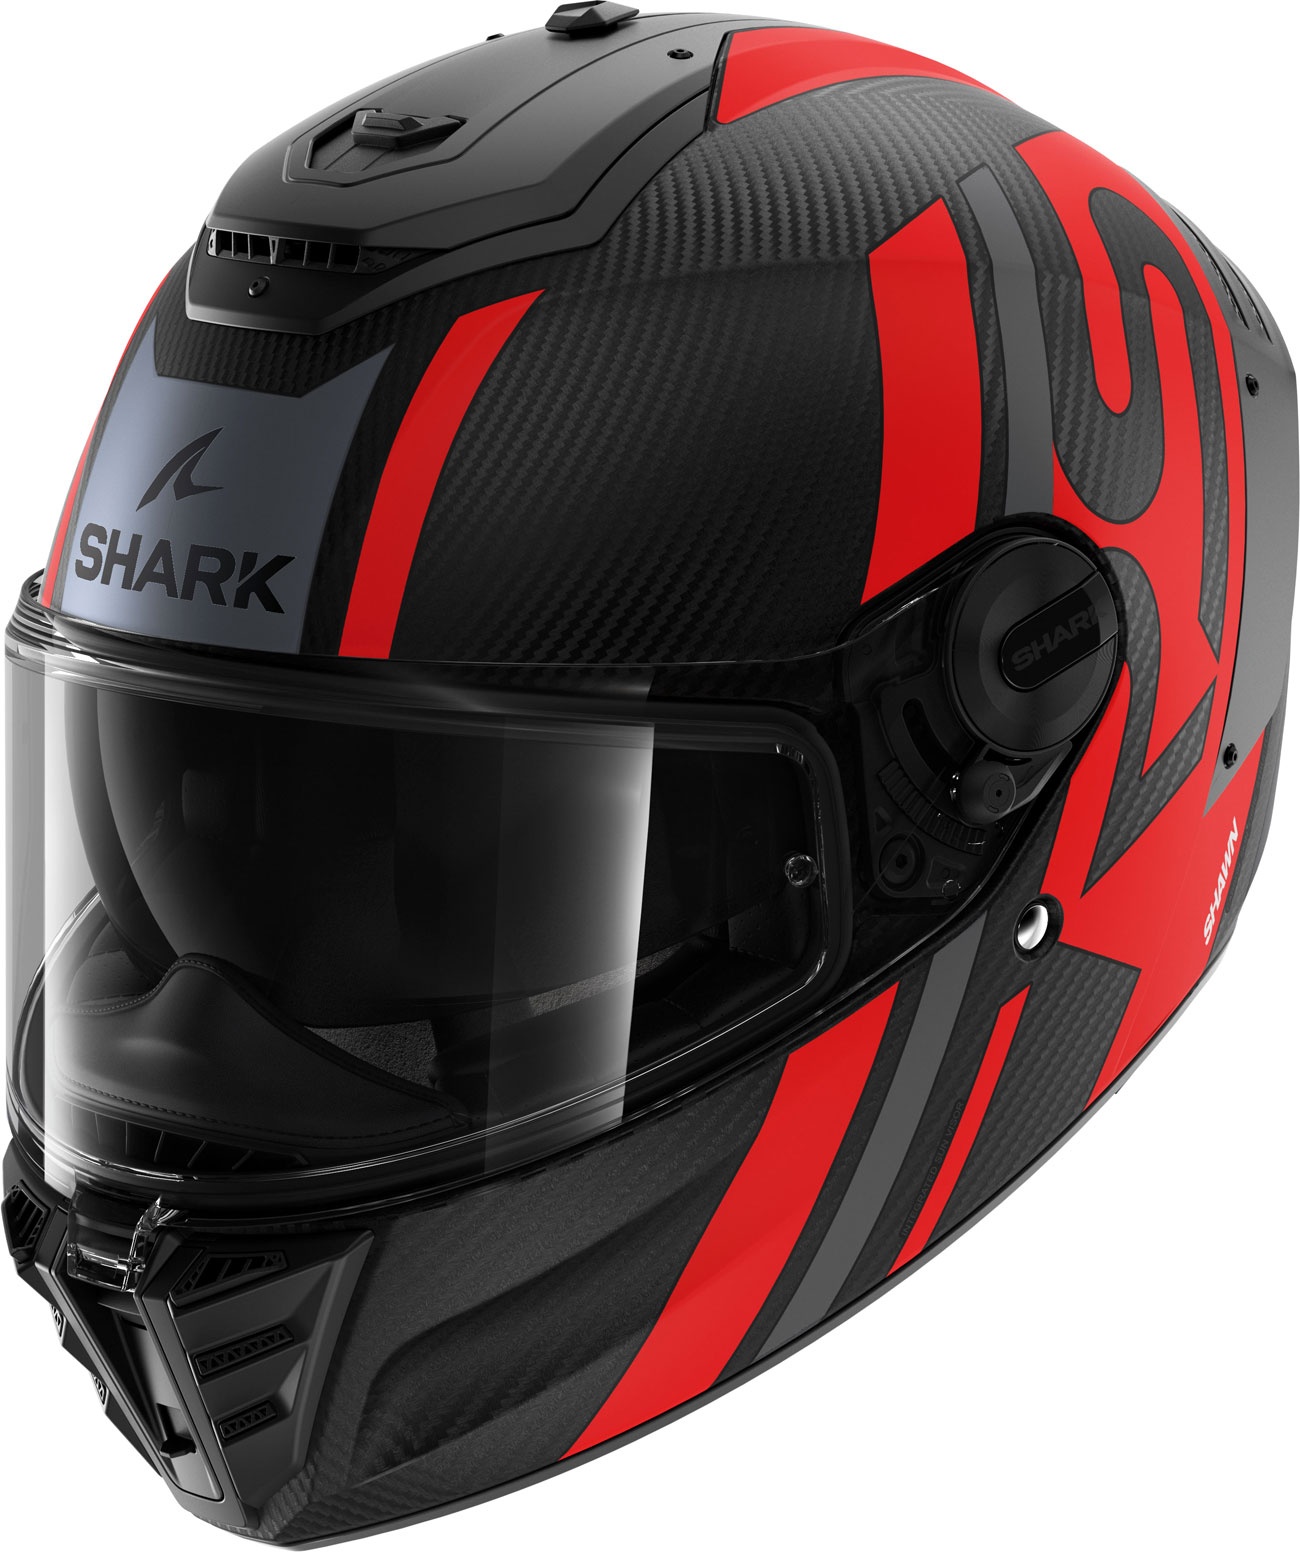 Shark Spartan RS Carbon Shawn, Integralhelm - Matt Schwarz/Dunkelgrau/Rot - XL